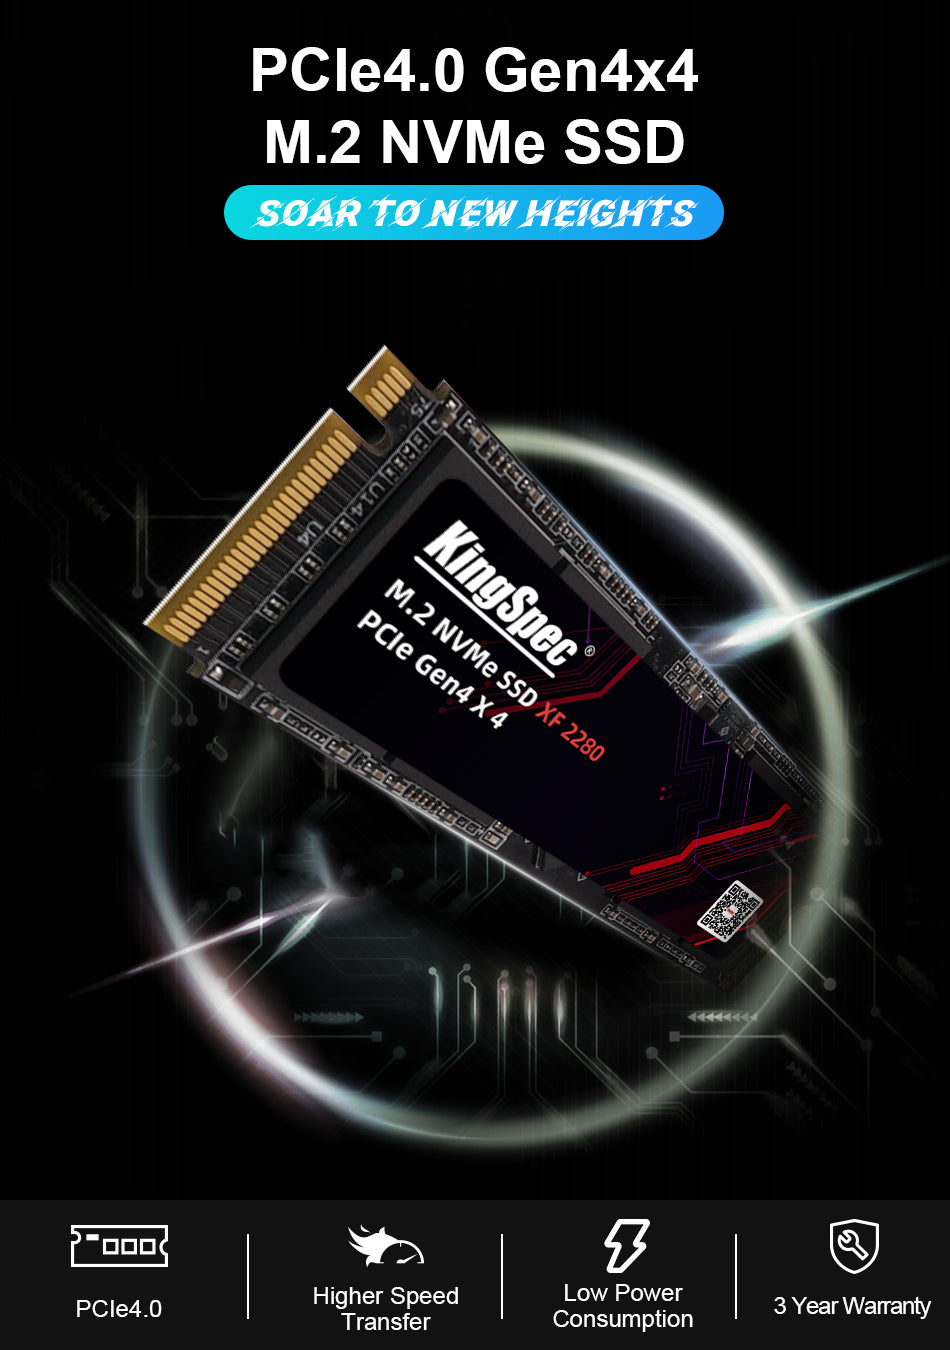 SSD M.2 NVME 2280 PCle Gen 4×4, NVMe 1.4 KingSpec 2To XF-2TB (2280) -  Disque SSD - KINGSPEC